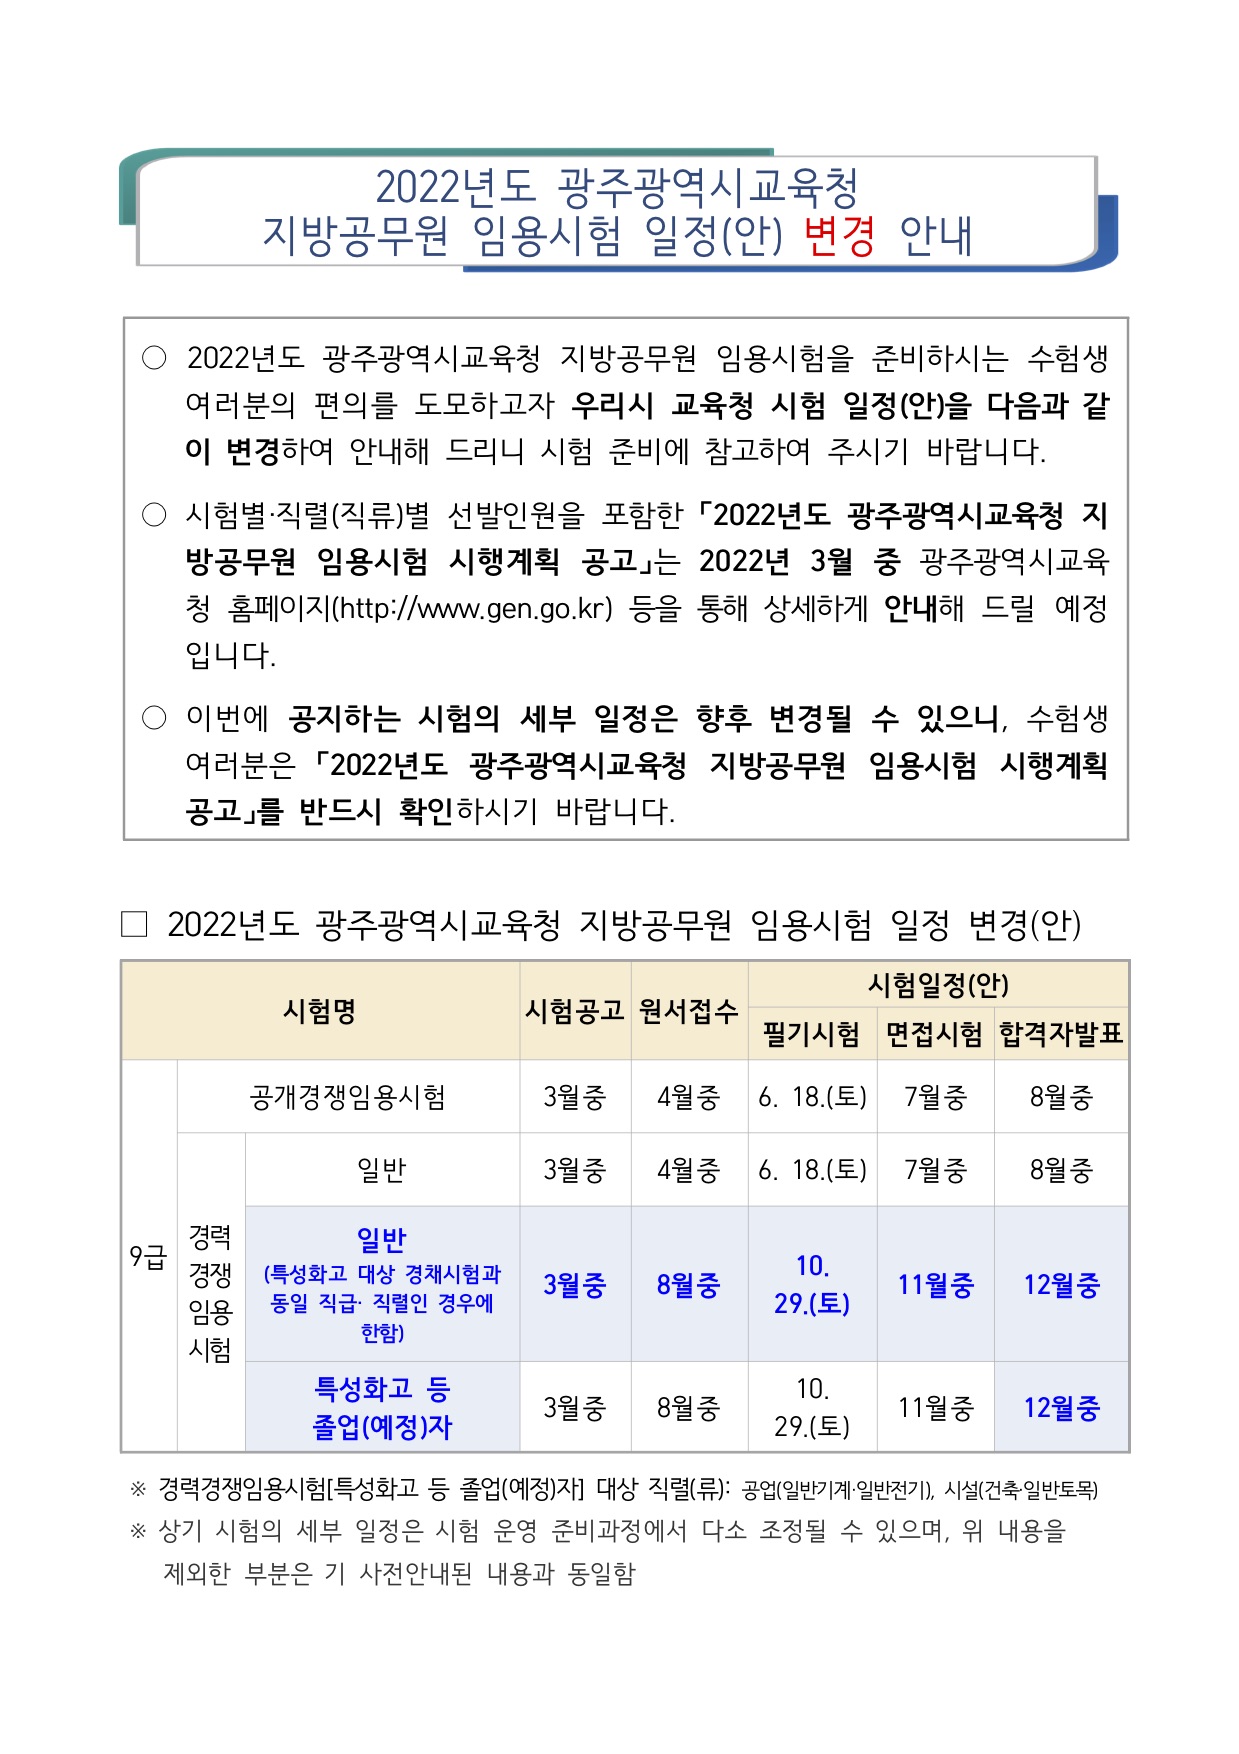 [변경] 2022년도 광주광역시교육청 지방공무원 임용시험 일정(안) 변경 안내.jpg